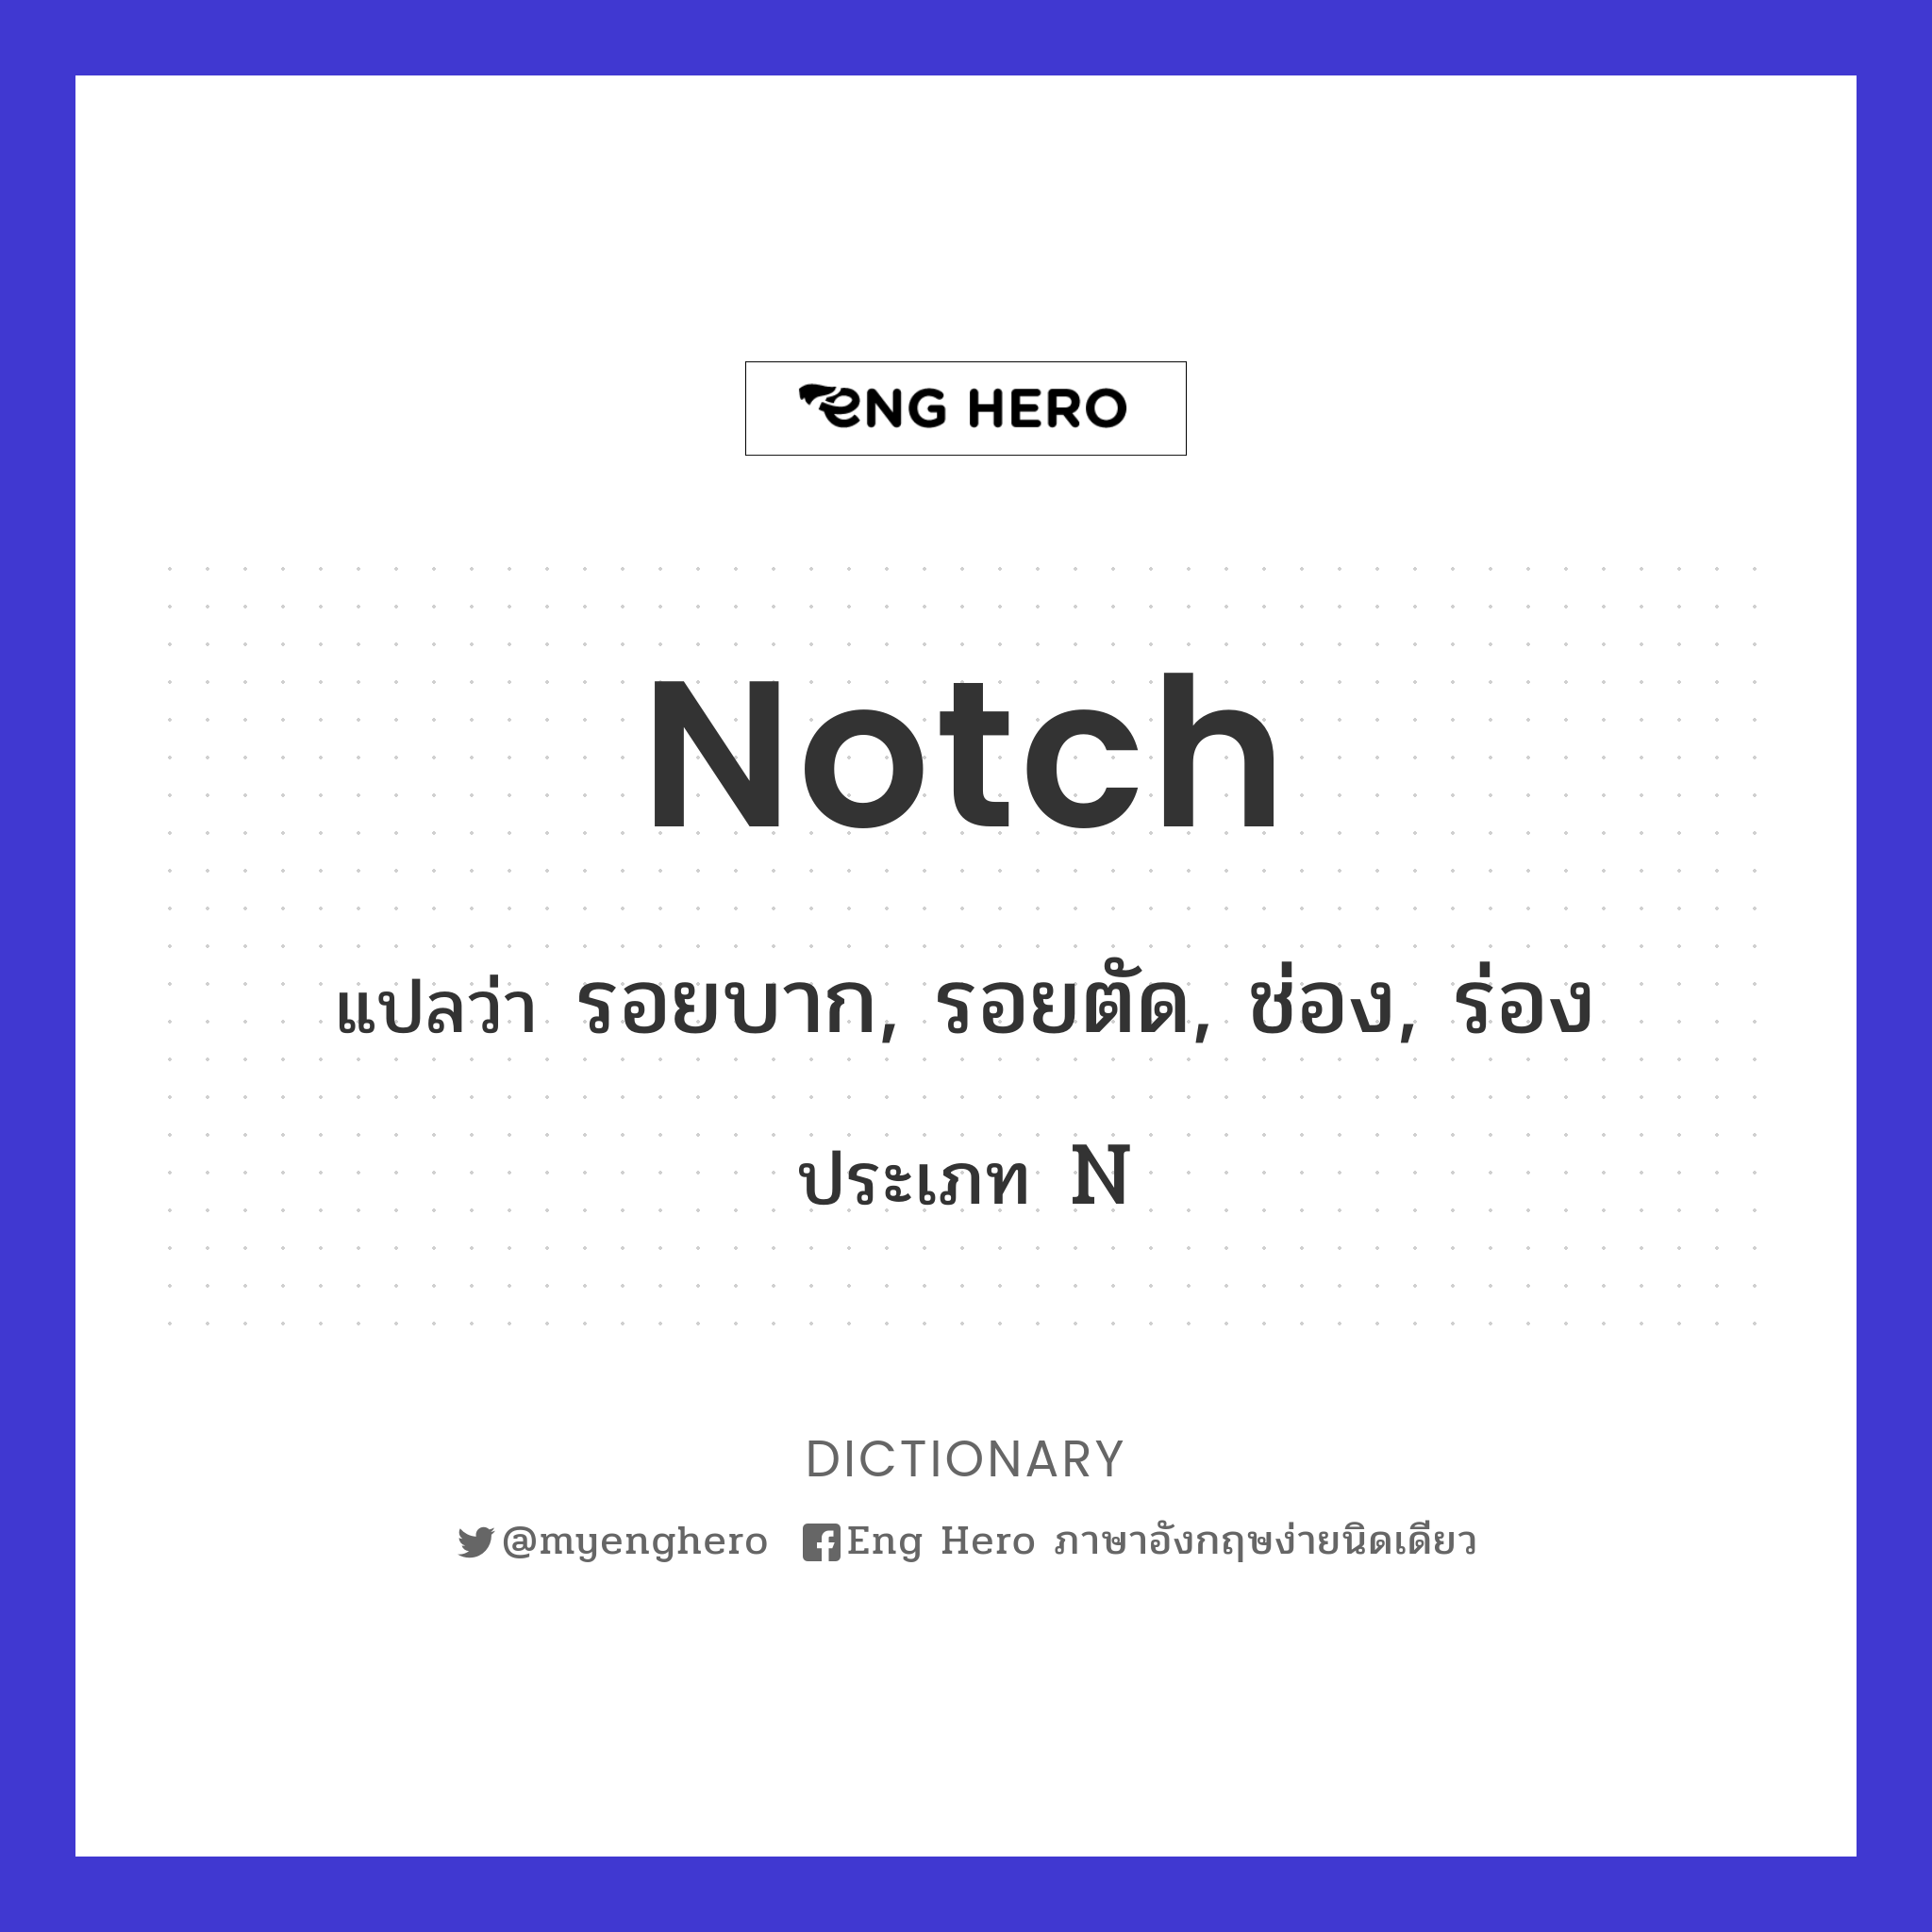 notch